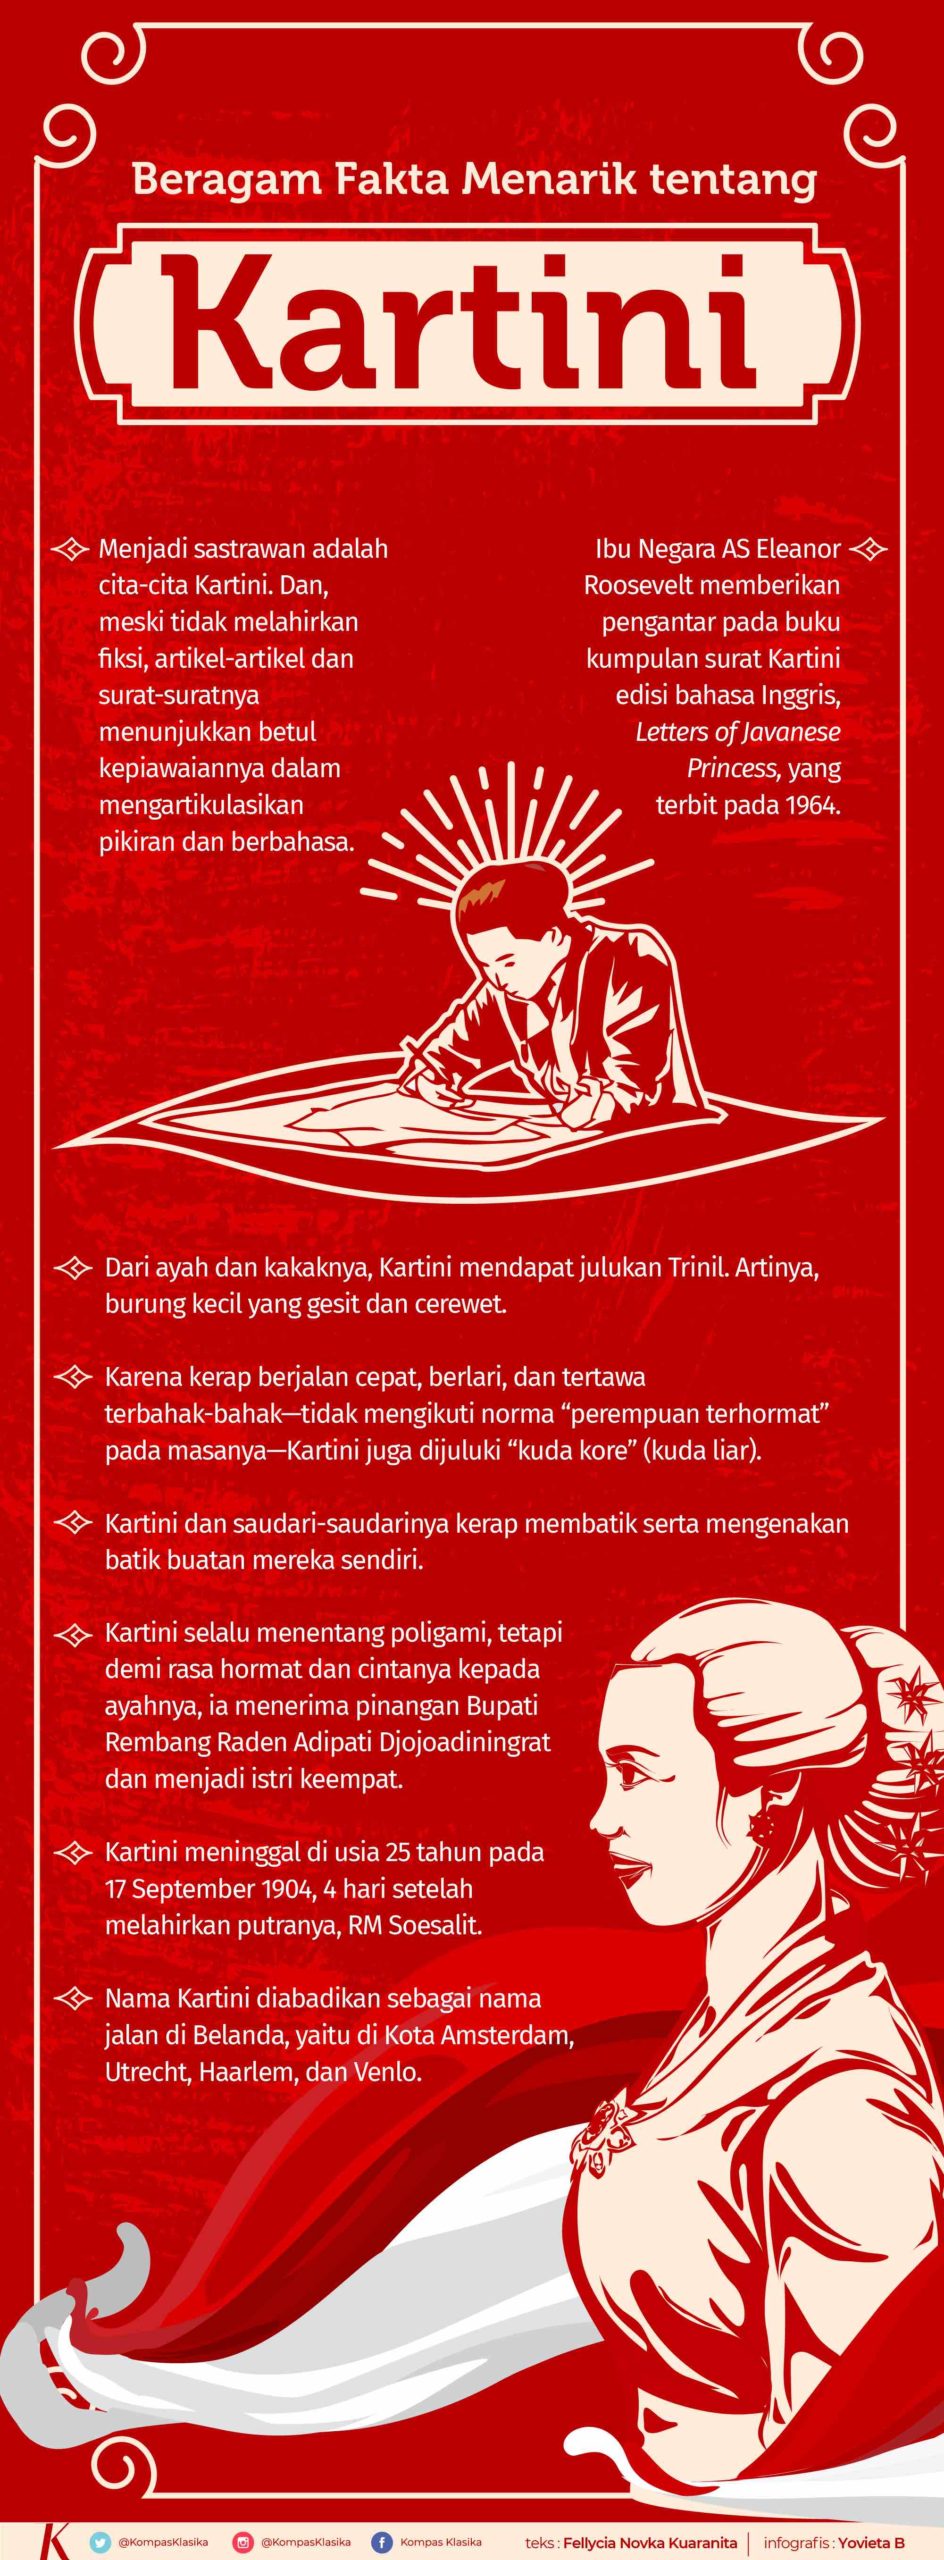 Infografik Fakta Menarik tentang Kartini